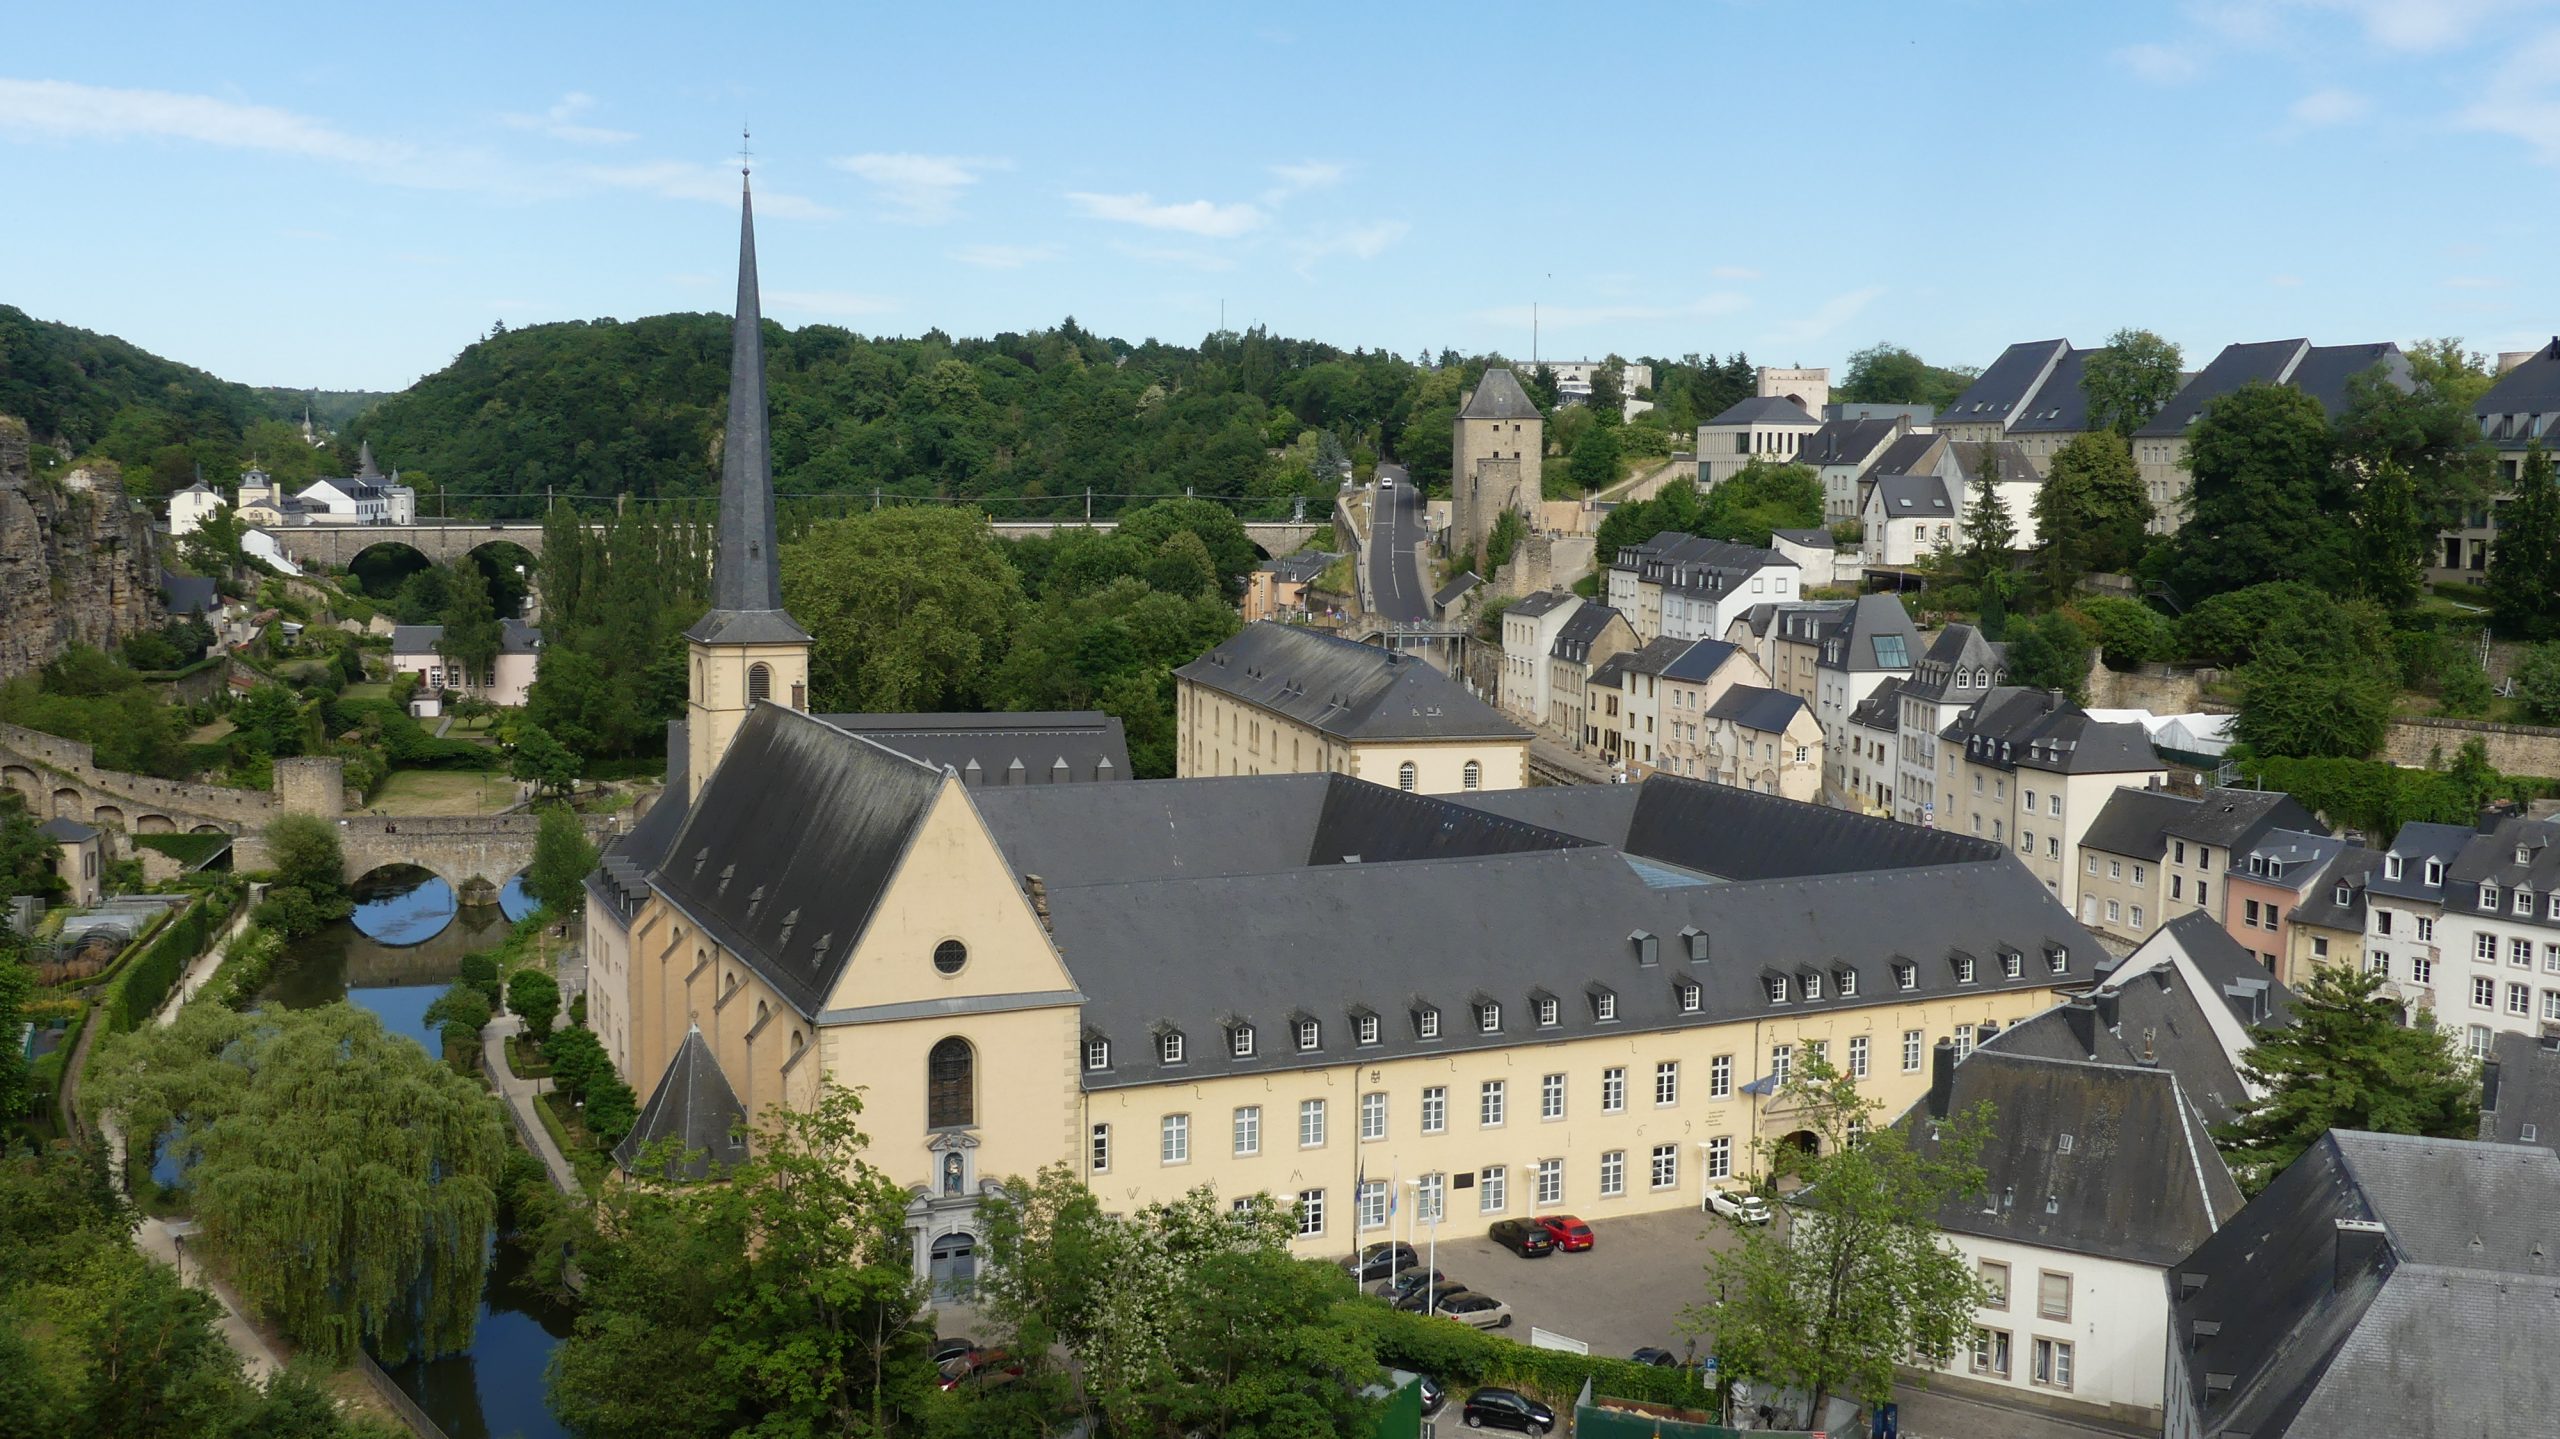 Una de las imágenes más conocidas de la ciudad de Luxemburgo. (Foto: La Crónic@)